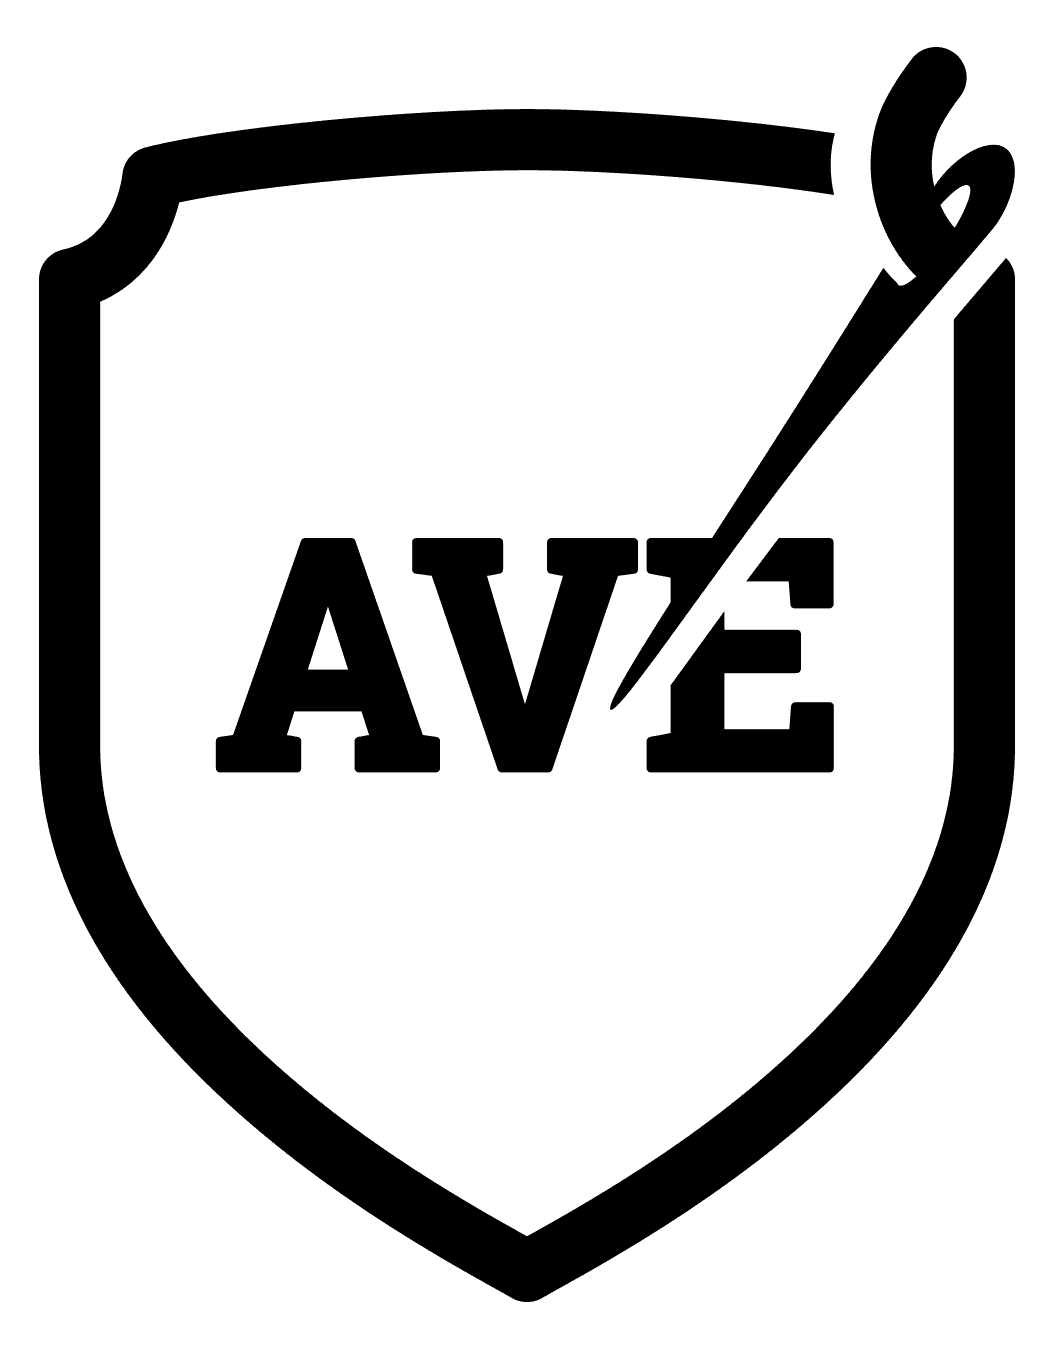 AVE Shop